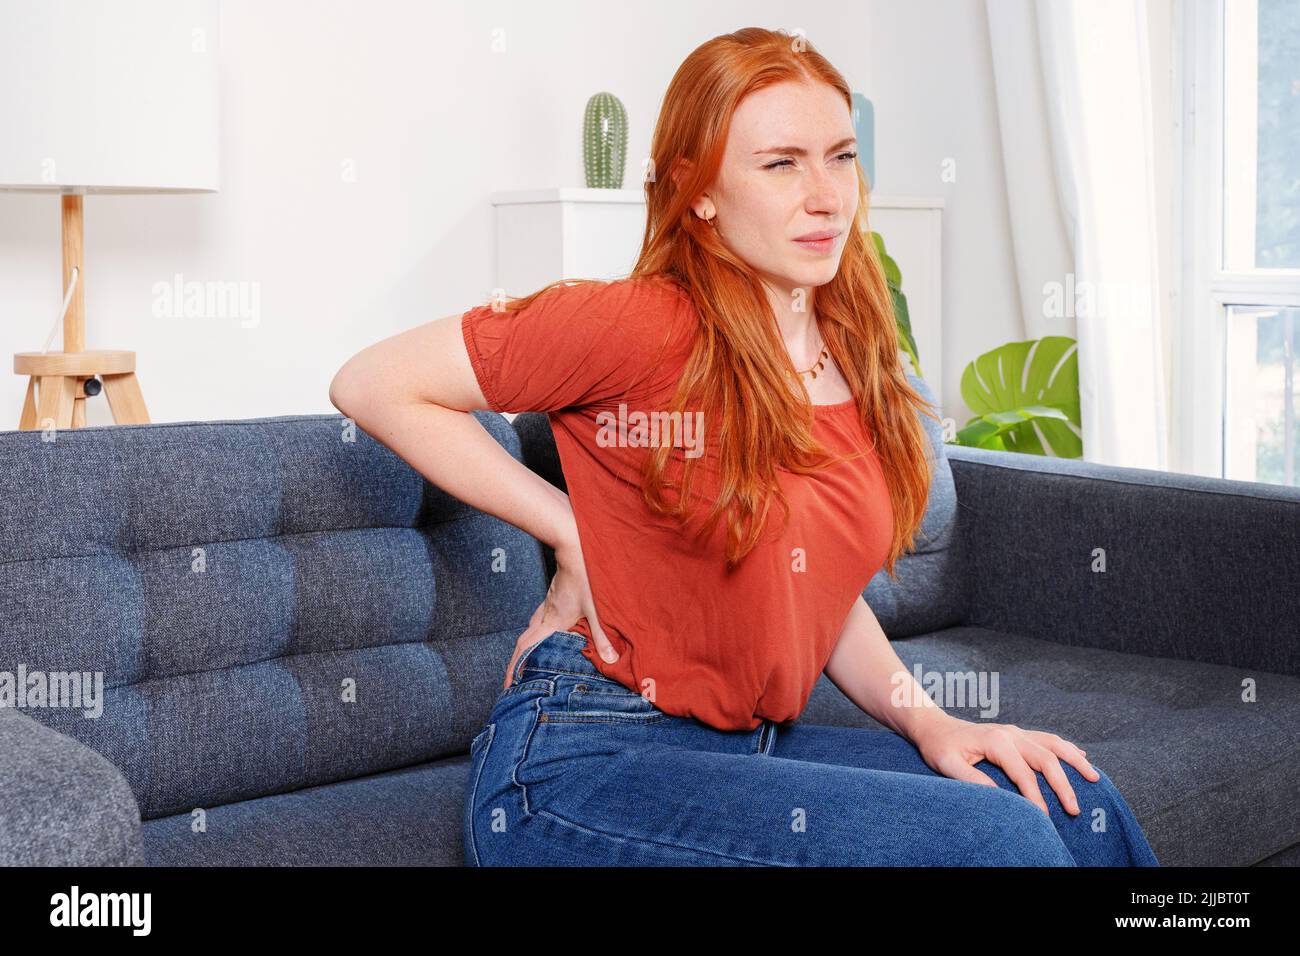 Mujer sentada en un sofá y sufre de dolor de espalda baja Foto de stock